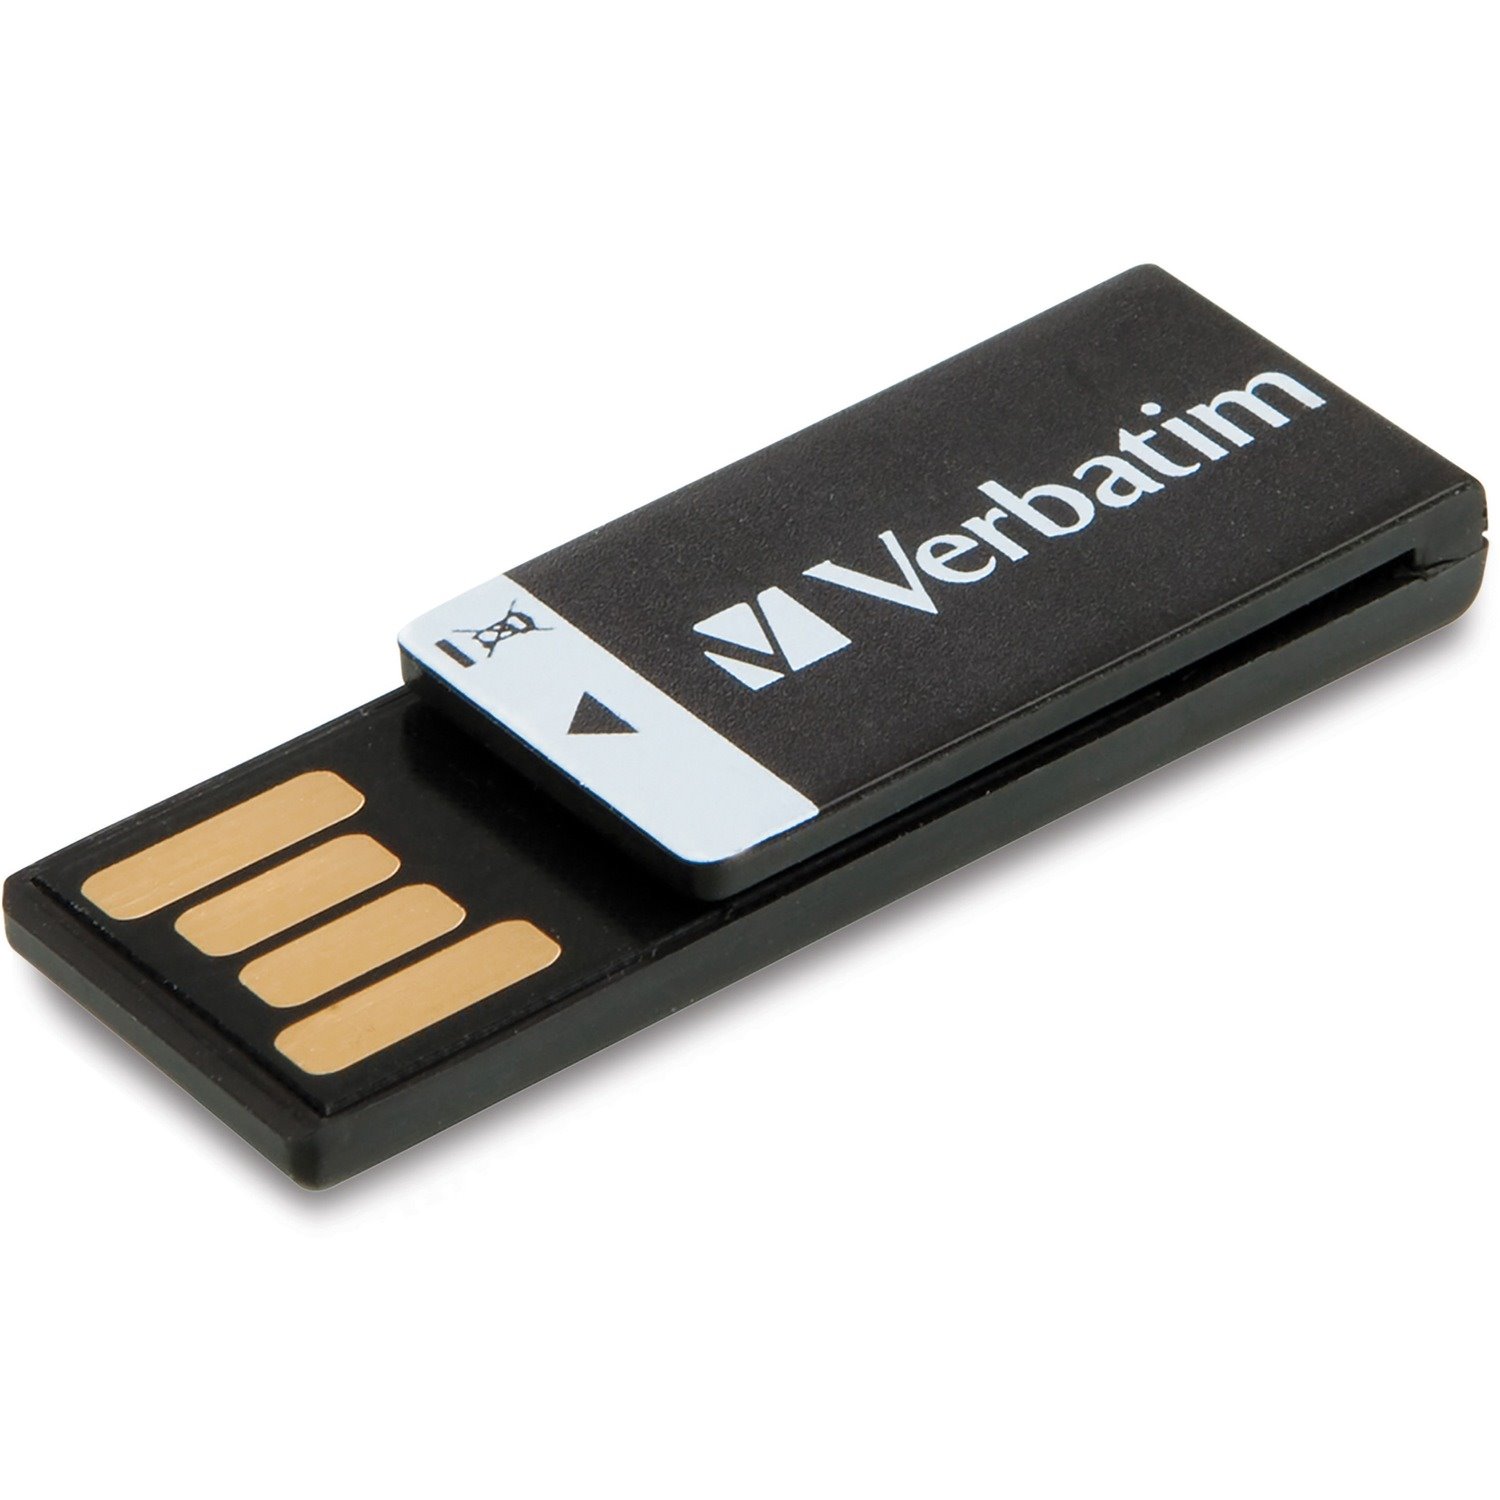 16GB Clip-it USB Flash Drive - Black